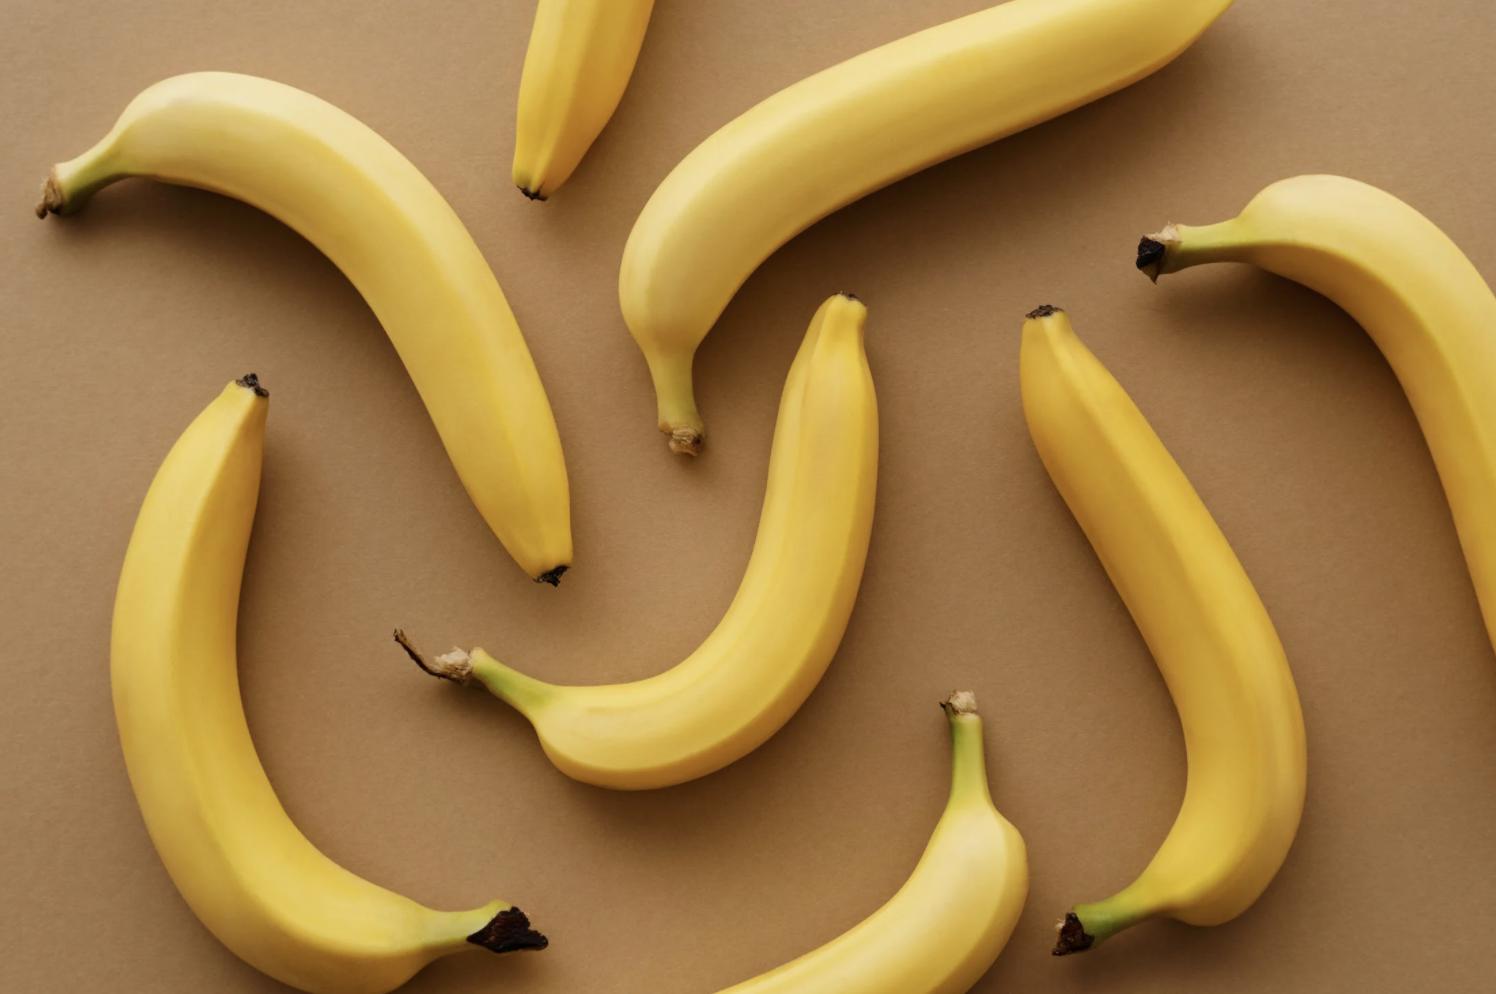 彎的香蕉比較甜、更營養？   食藥署教你一定得知道的挑蕉秘訣